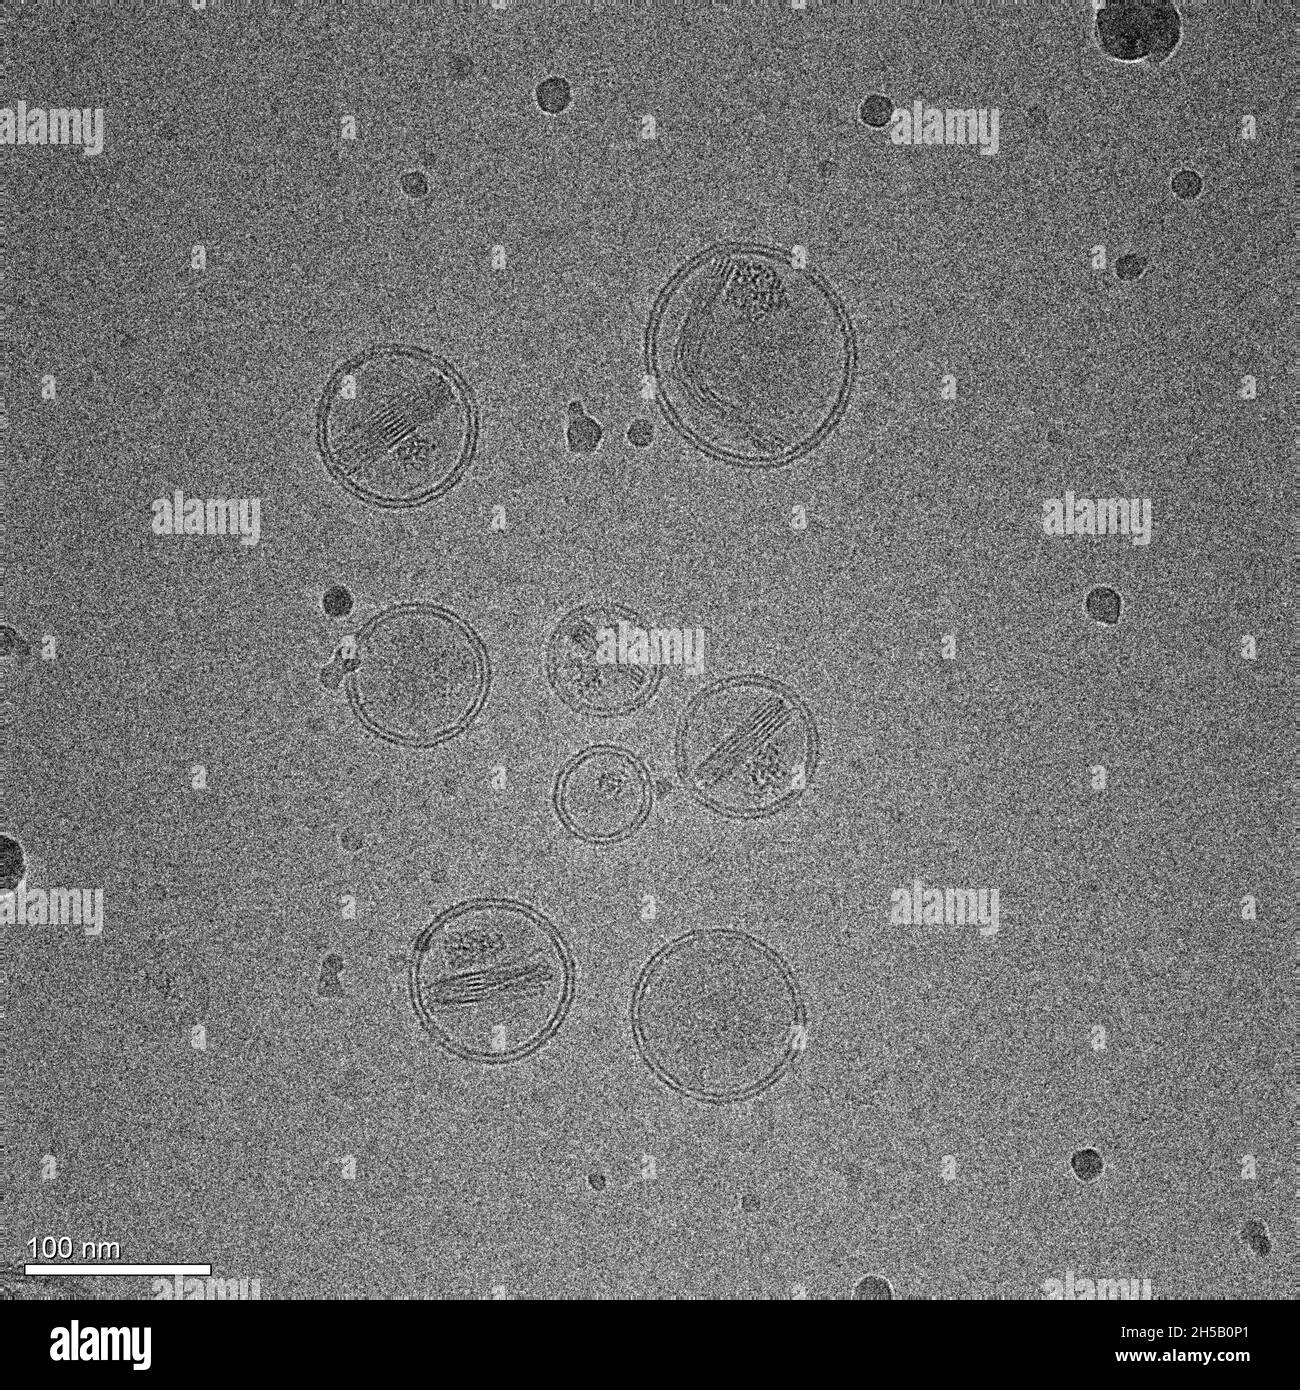 La micrografia rappresenta nanoparticelle costituite da lipidi contenenti un farmaco antitumorale Foto Stock